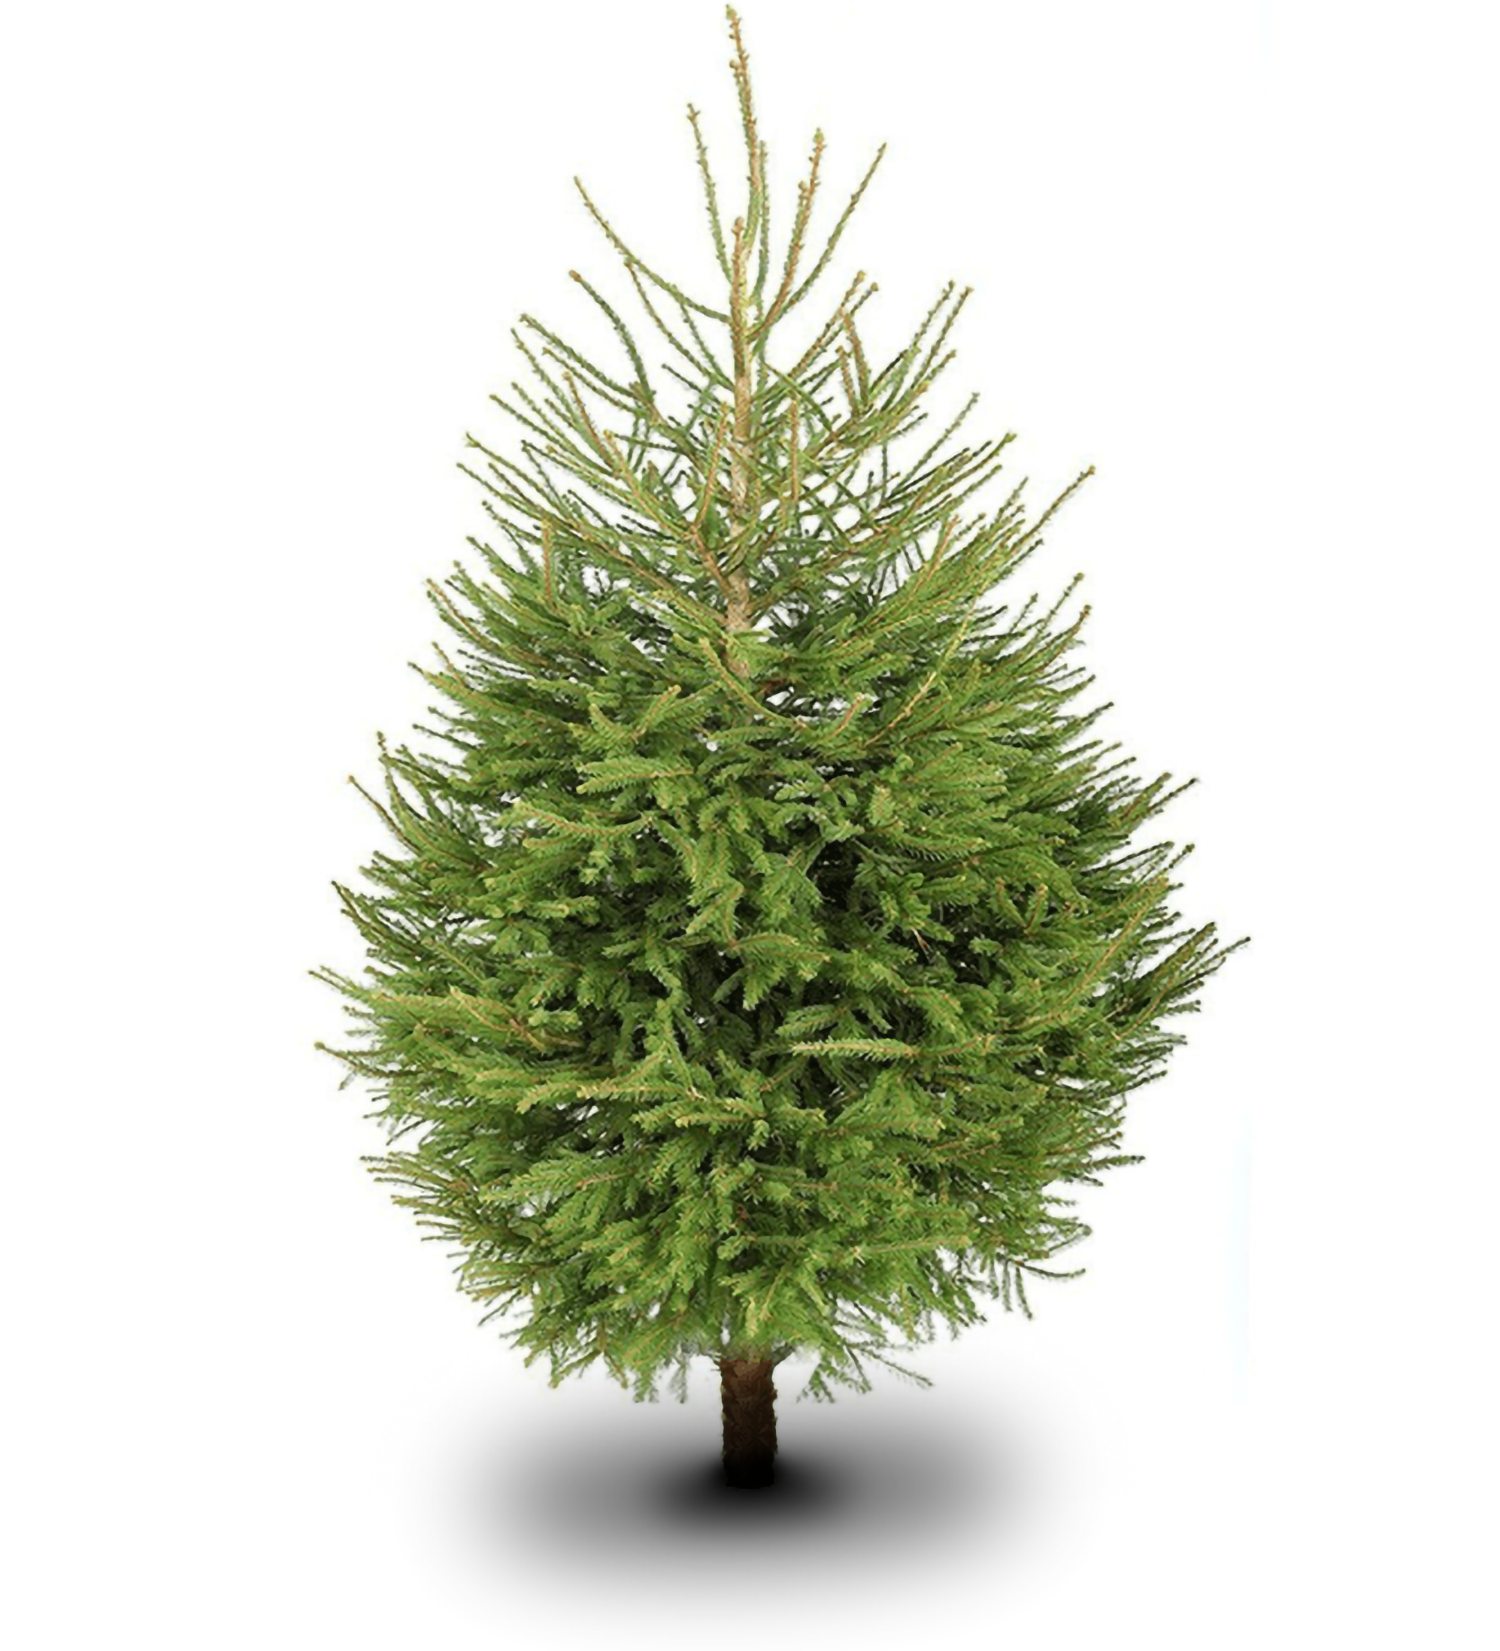 Traditional Christmas tree